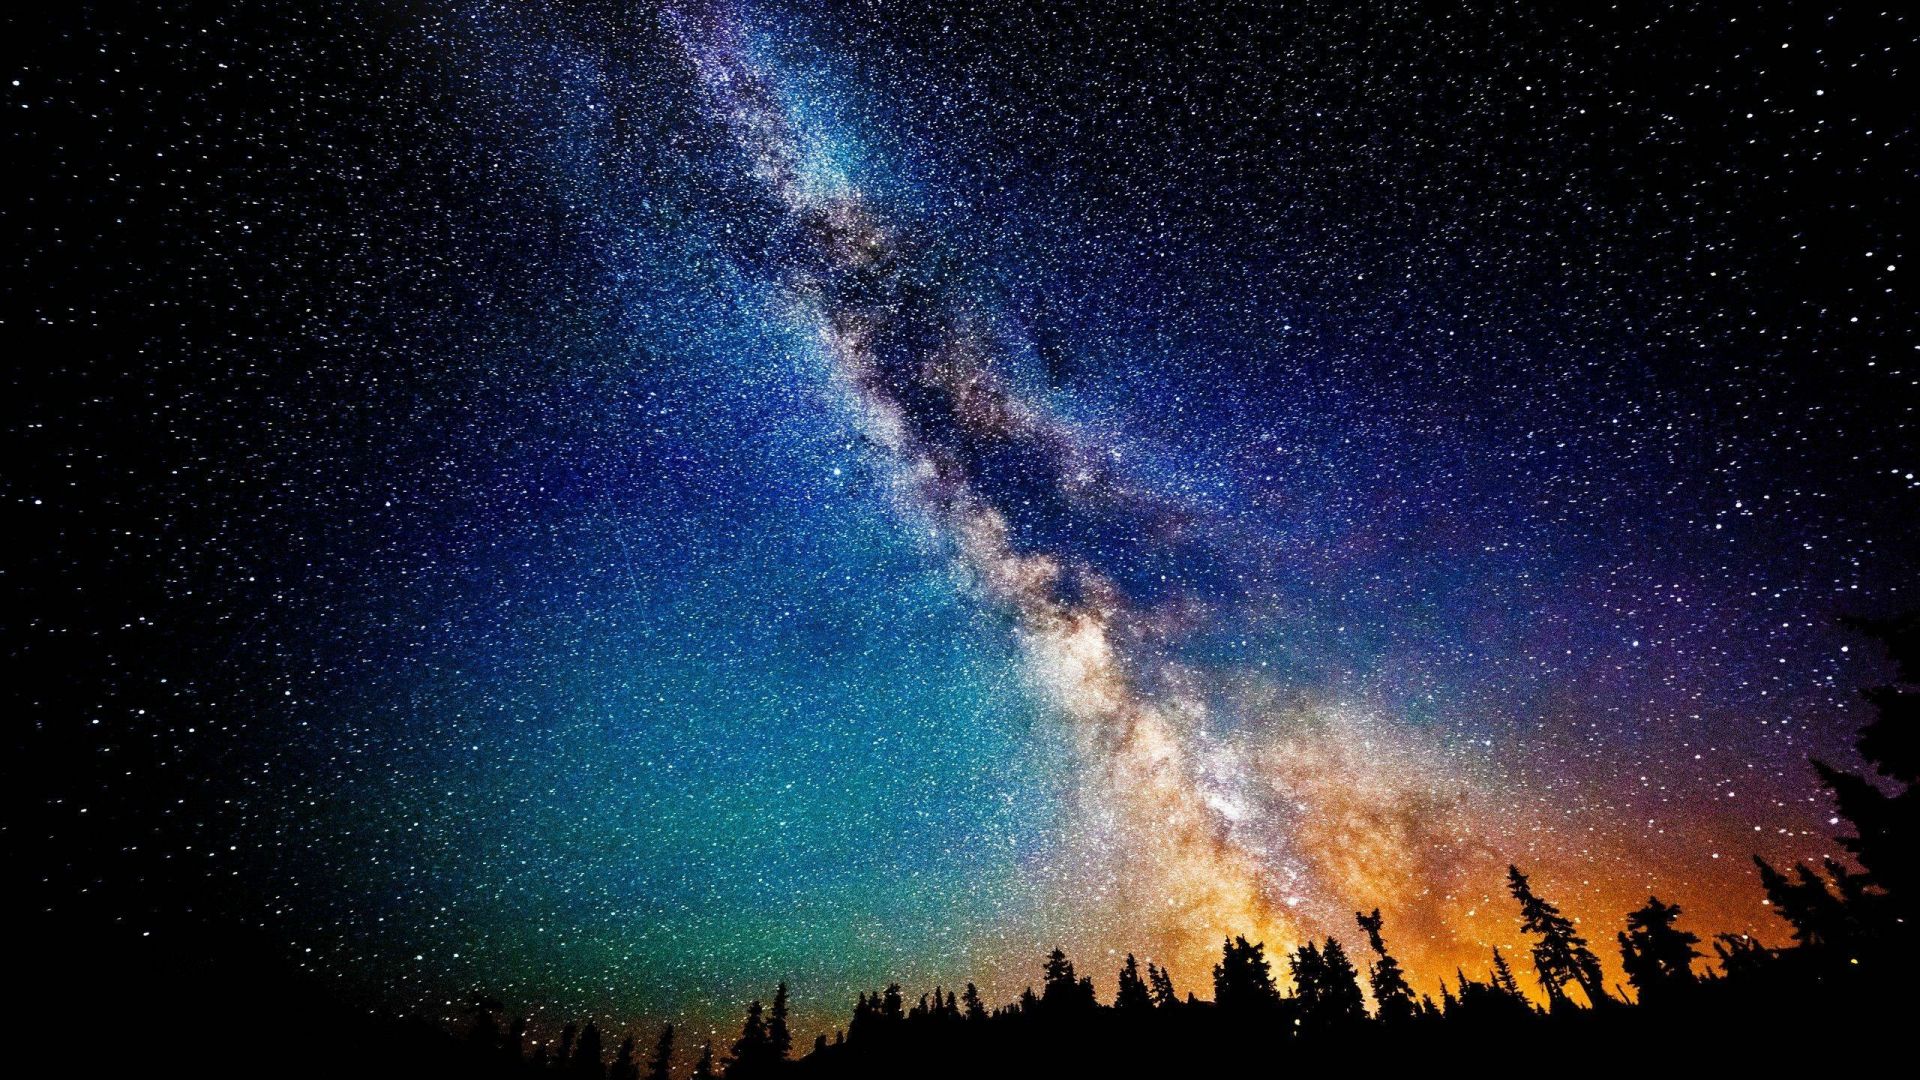 Đại dương ngân hà chứa đựng hàng tỉ vì sao, nhìn lên trời đêm để ngắm nhìn tinh tú rực rỡ, tìm hiểu thêm về vũ trụ hoang sơ và tuyệt đẹp.